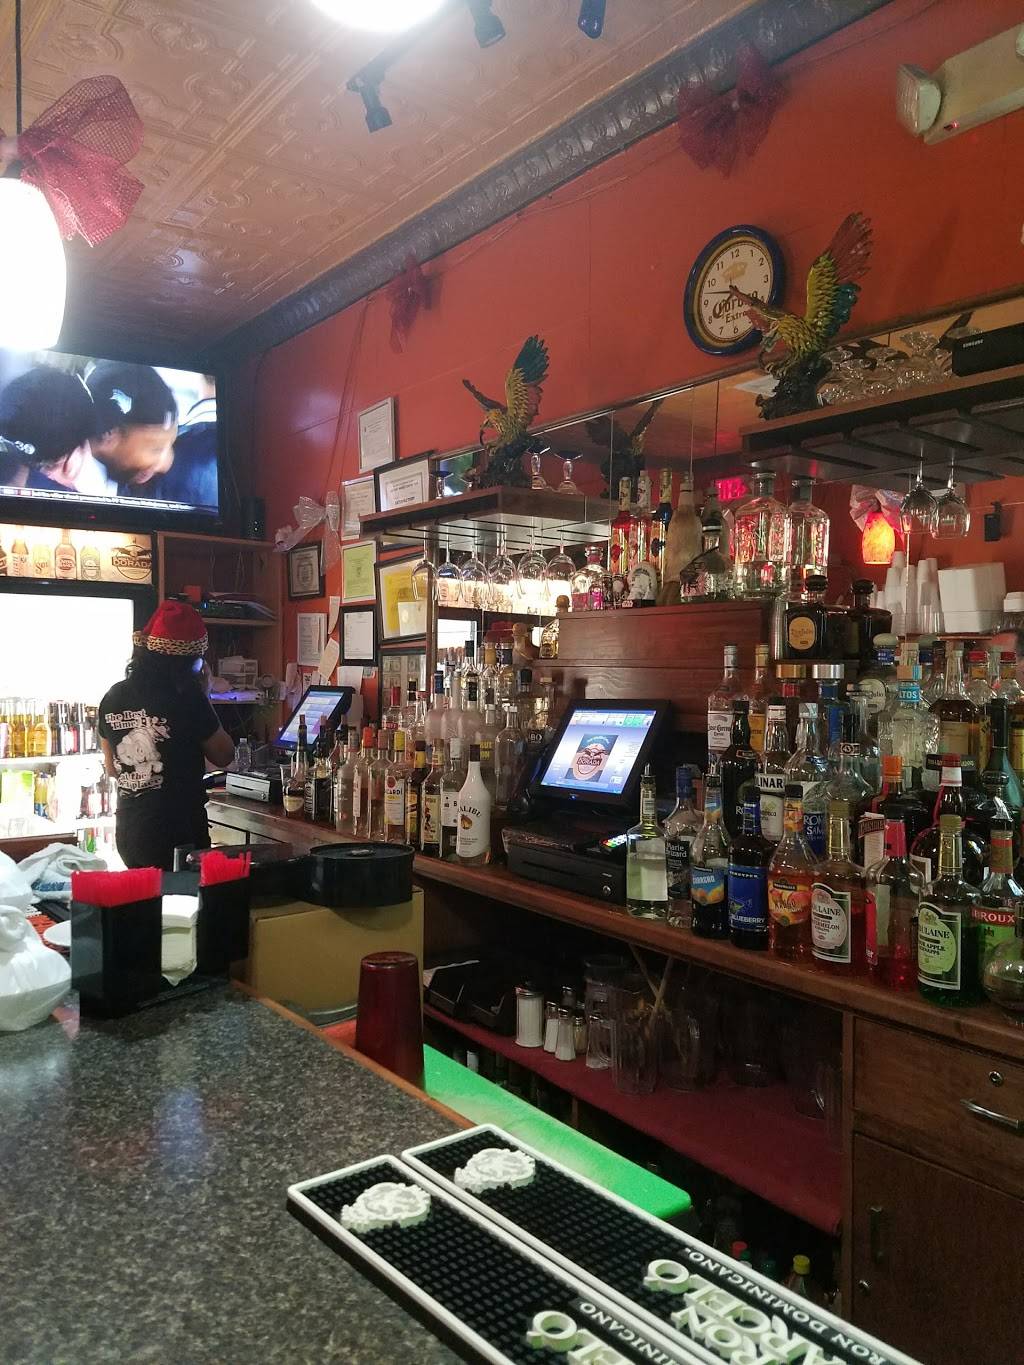 El Aguila Dorada | restaurant | 830 Broadway, Bayonne, NJ 07002, USA | 2018580033 OR +1 201-858-0033